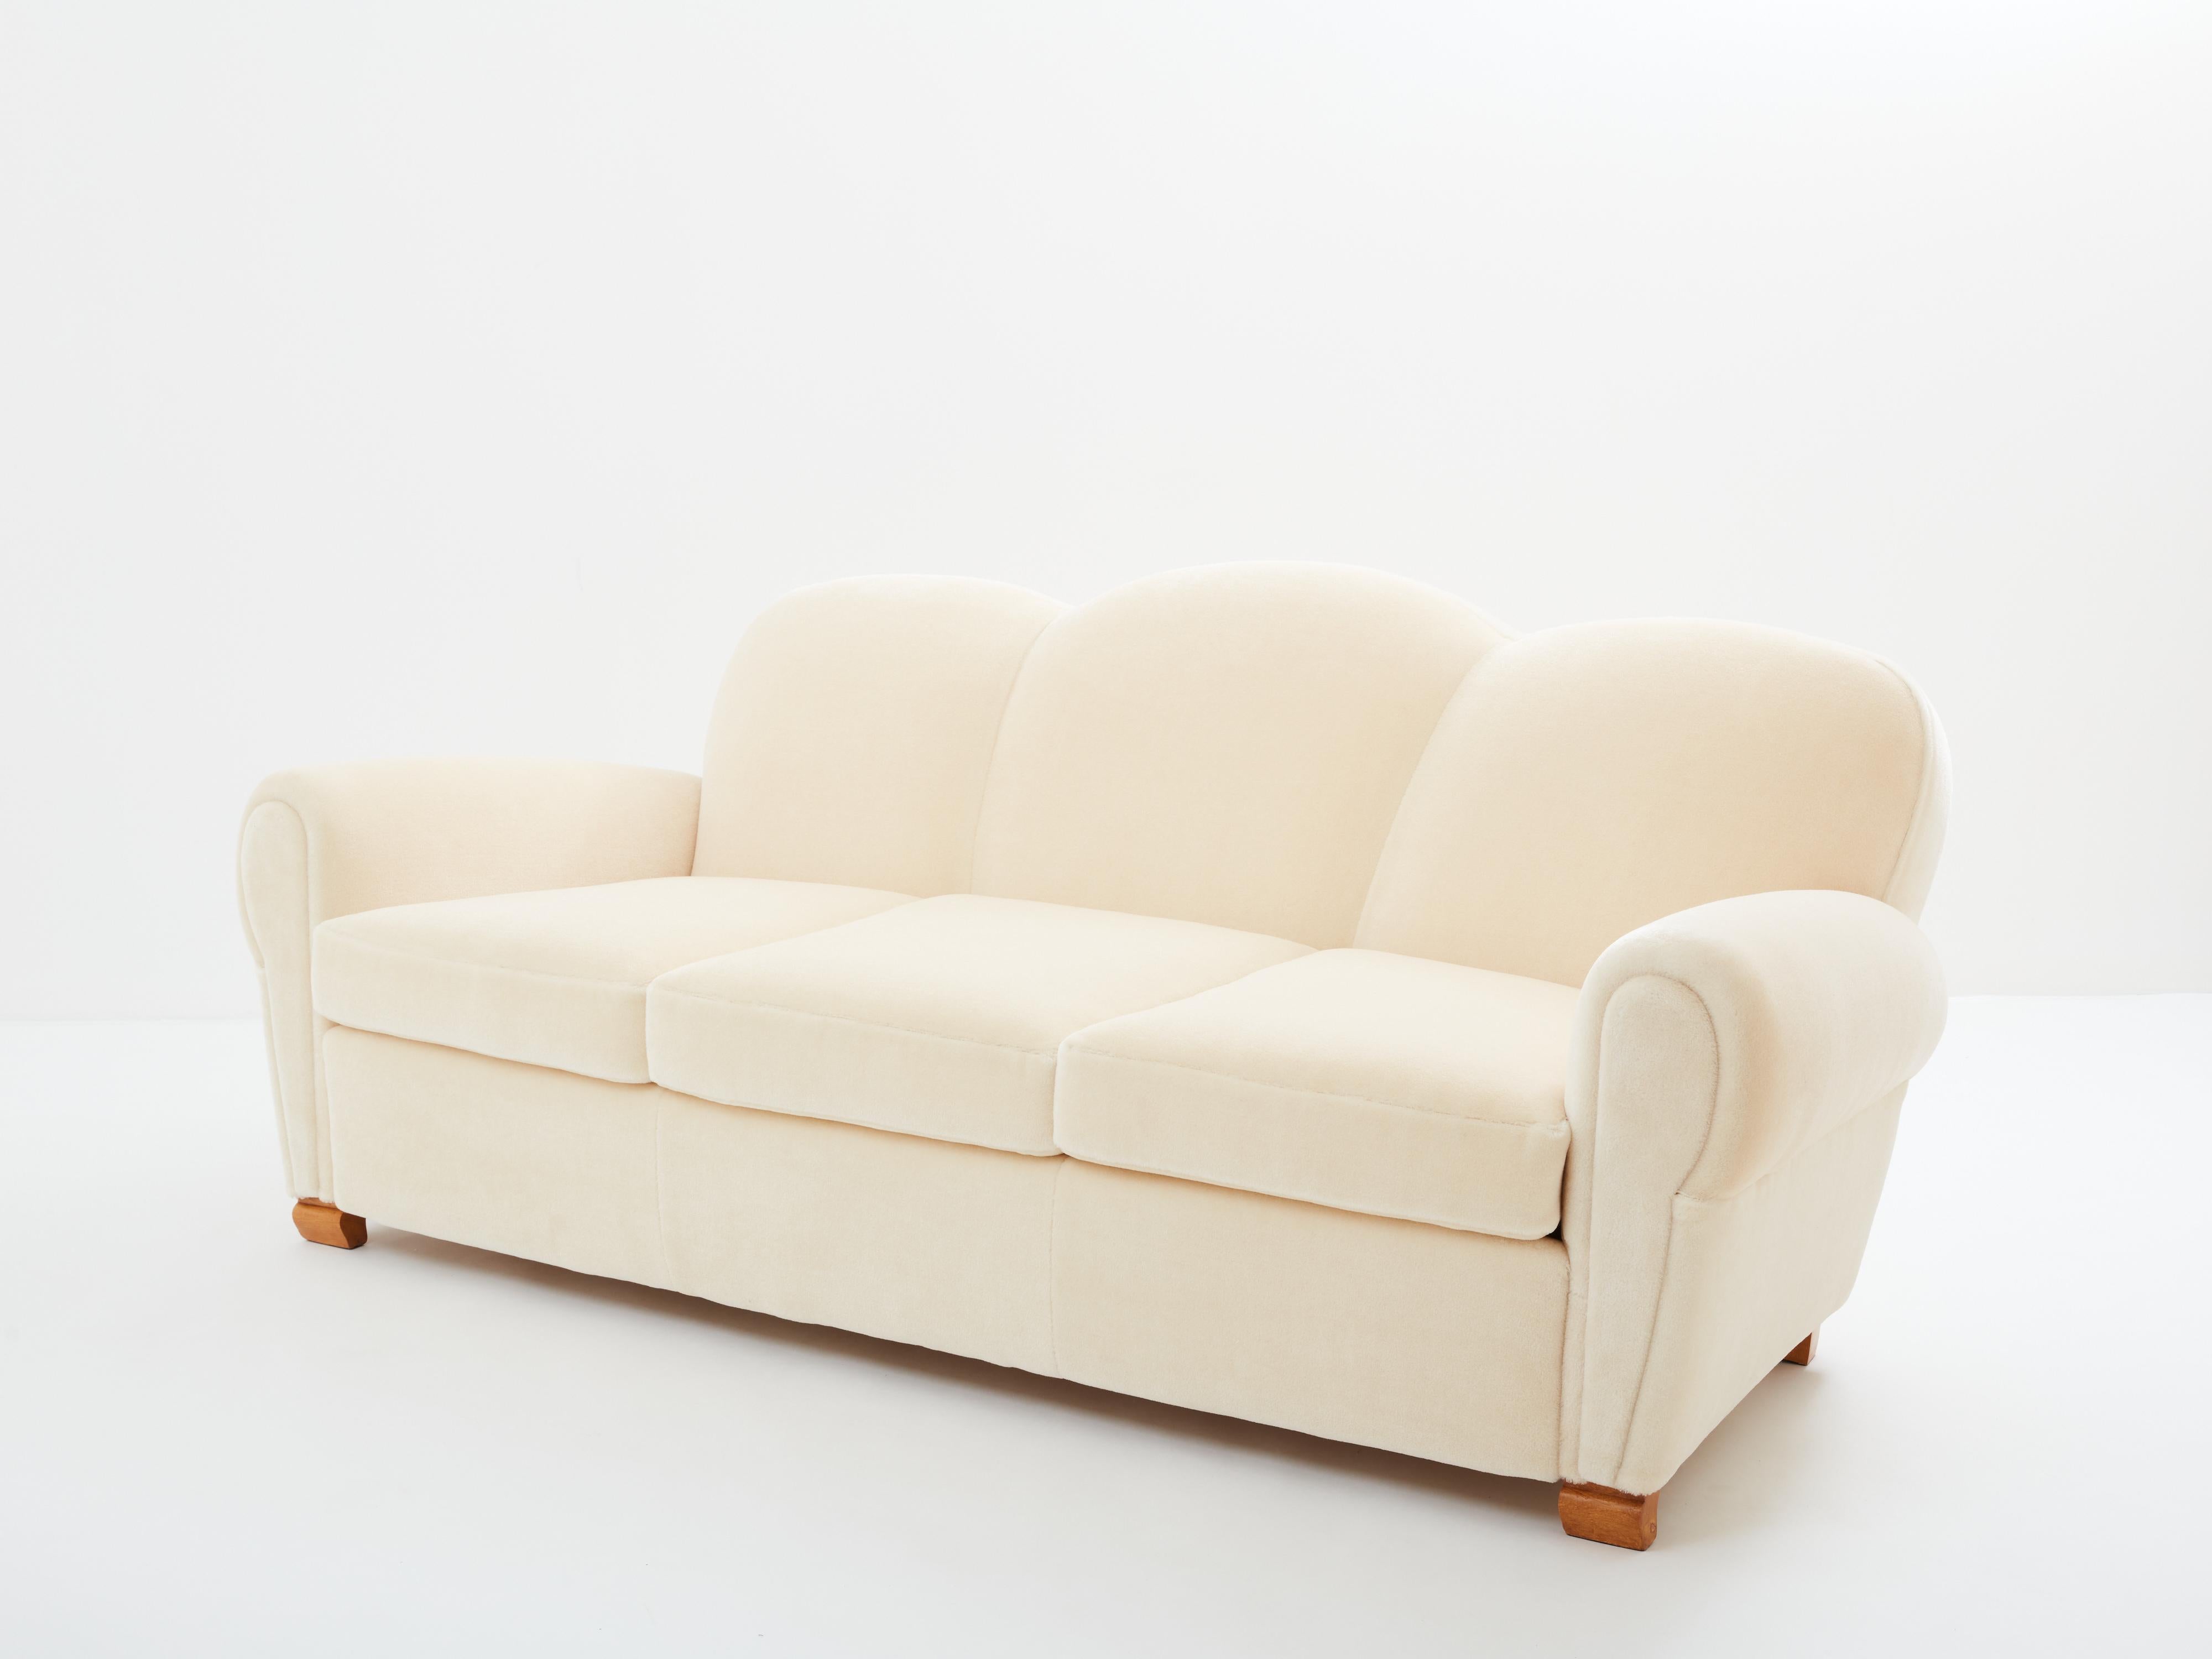 Ce magnifique canapé conçu par Jules Leleu vers 1945 incarne les lignes douces des ensembles de salon art déco qui sont apparus sur le marché au début des années 1930. Les lignes douces et arrondies sont d'une grande beauté. Elles sont terminées par